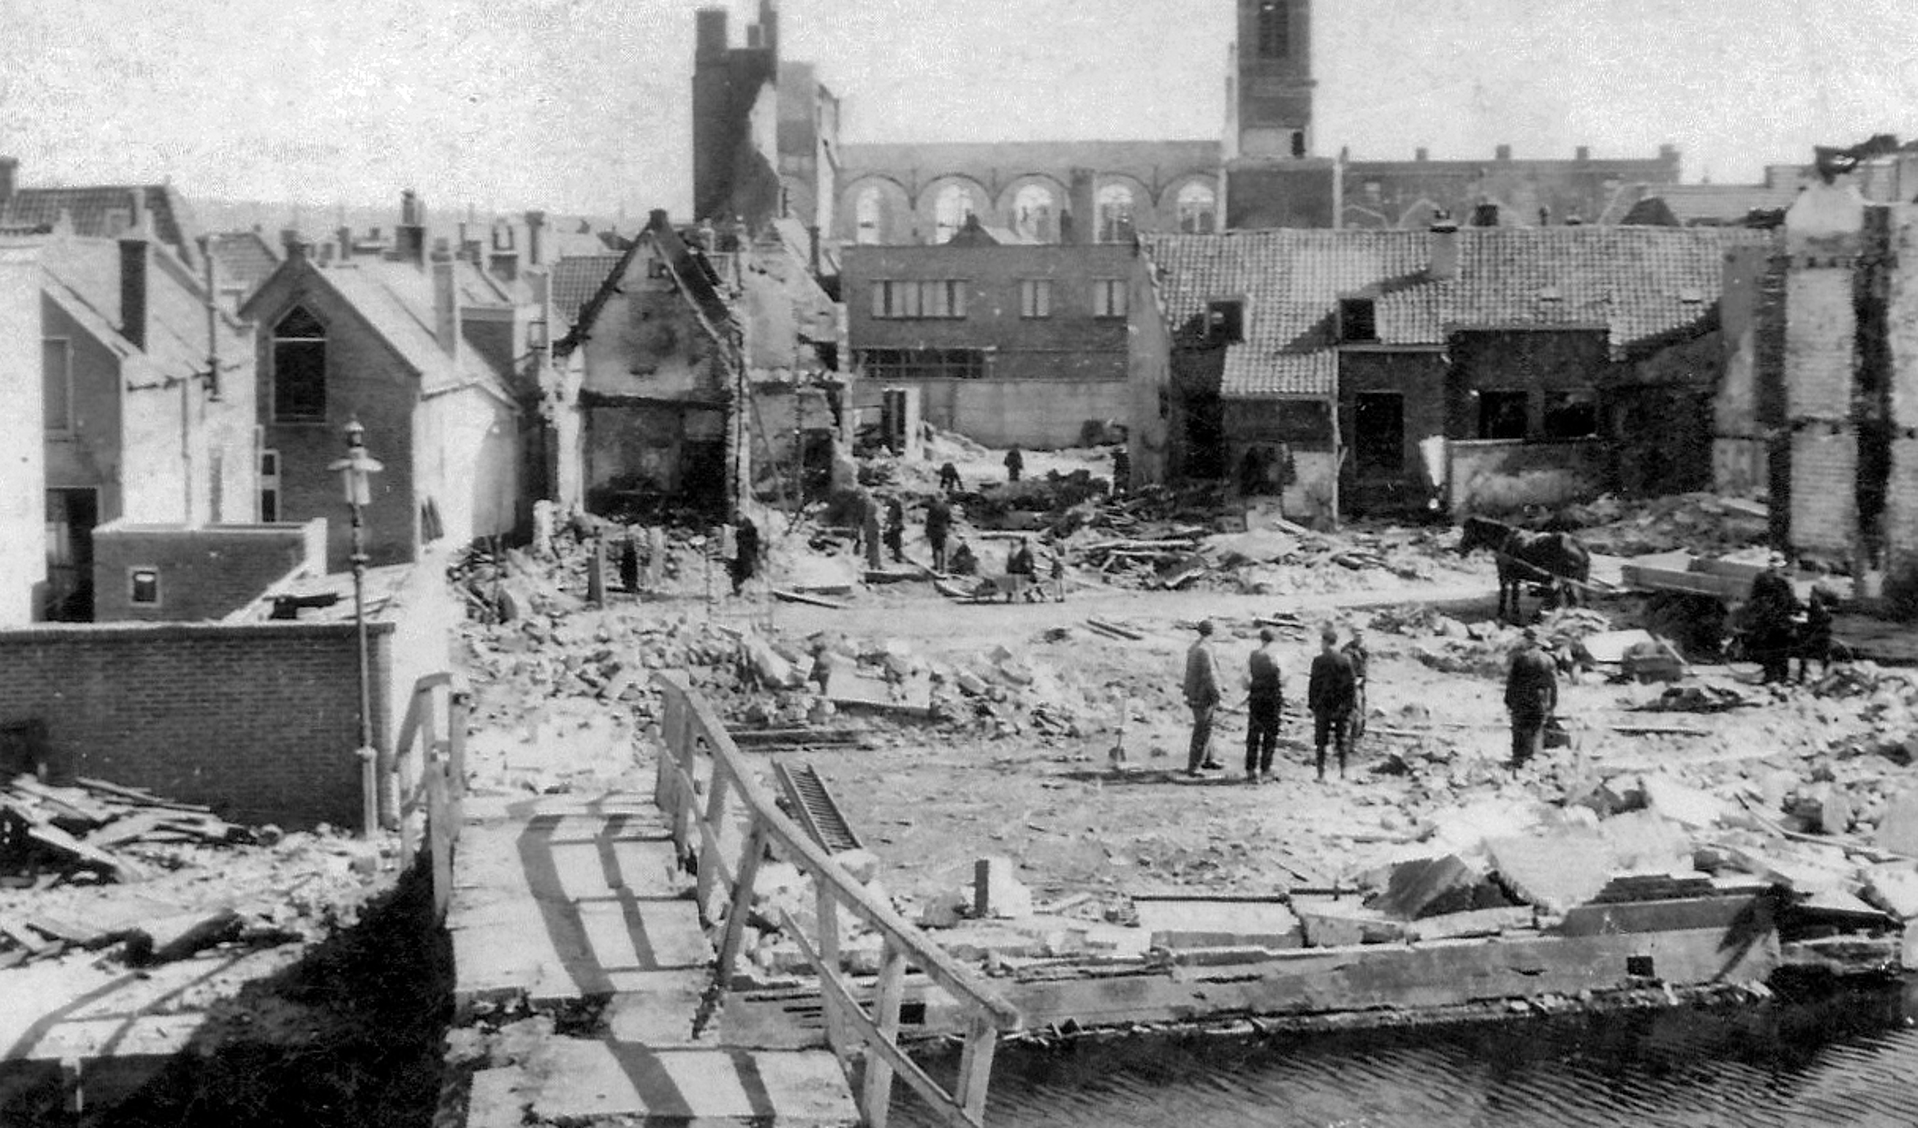 De gevolgen van het bombardement op 18 maart 1943 gezien vanaf de Noorddijk richting Wagenstraat. Op de achtergrond de restanten van de Noorderkerk. Op de voorgrond de Karnemelkbrug.